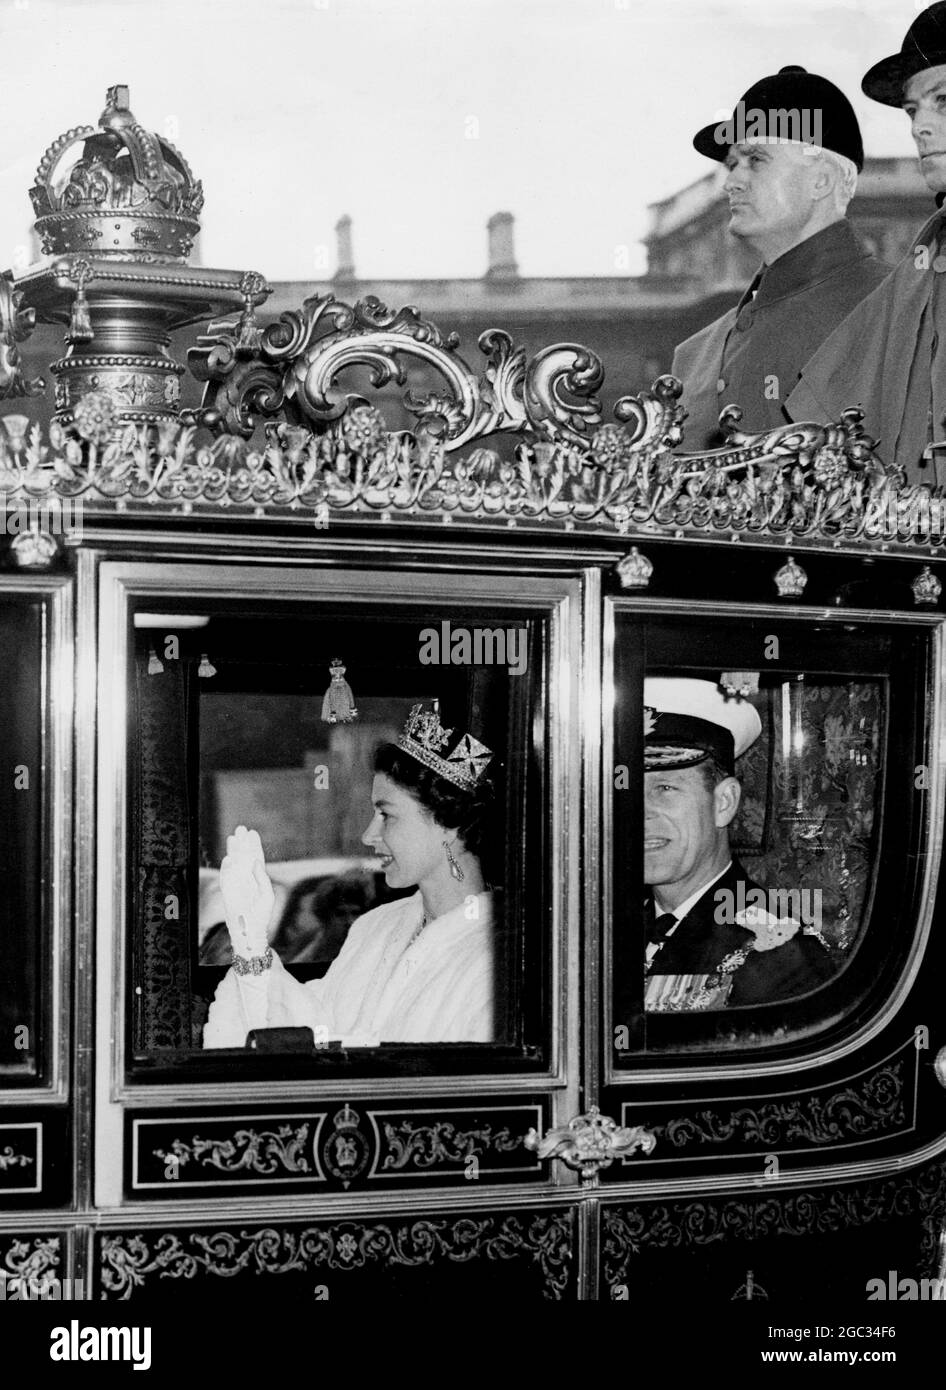 HM die Königin eröffnet das Parlament heute Morgen fährt HM die Königin vom Buckingham Palace zu den Houses of Parliament zur State Opening. Bild zeigt: Die Königin HM und Prinz Philip im Staatswagen auf dem Weg zum Oberhaus. November 1957 Stockfoto